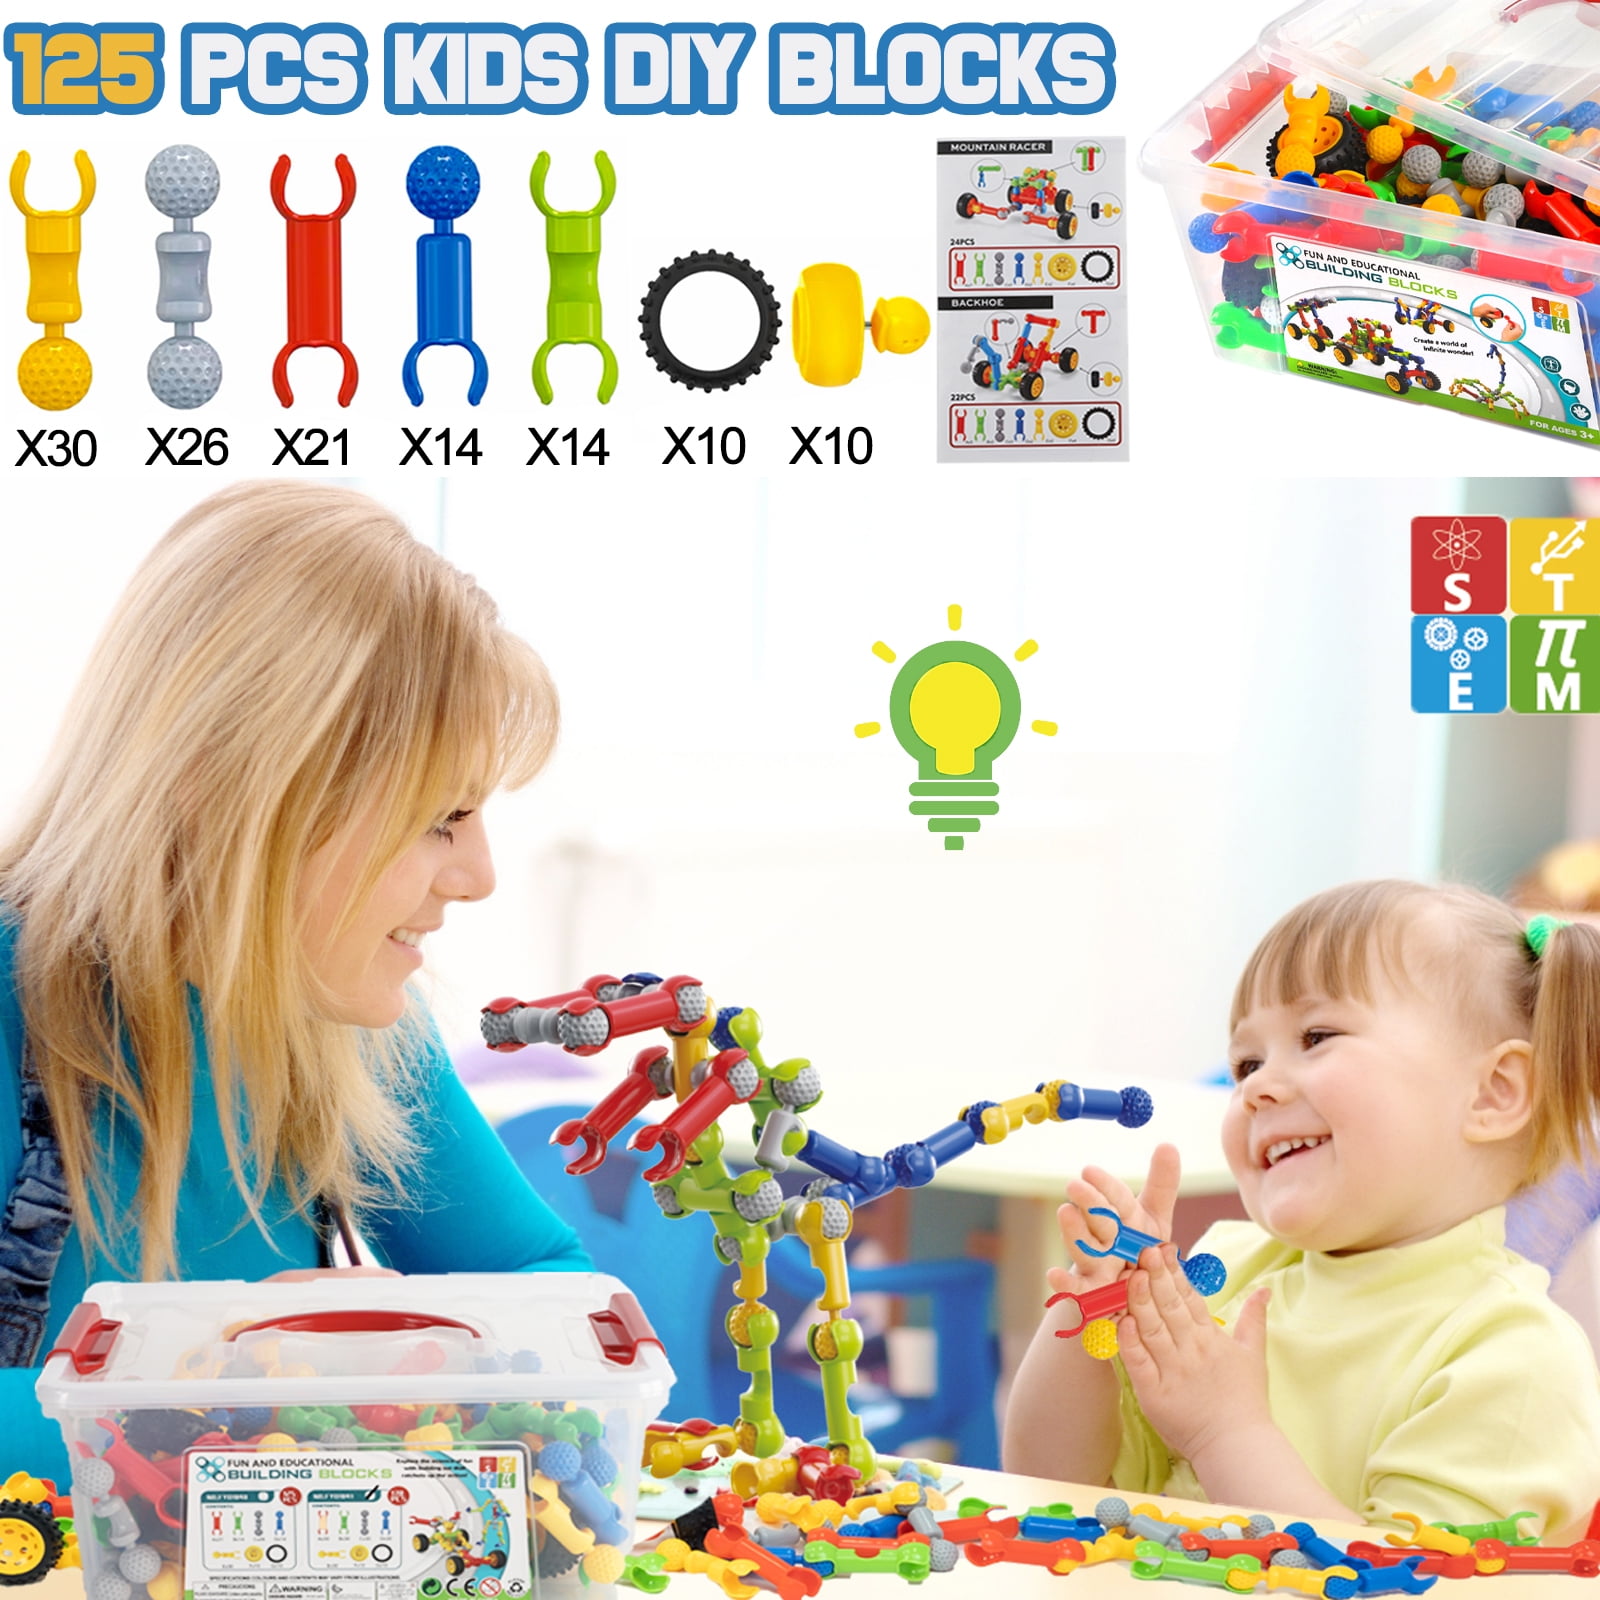 Kids Building STEM Toys, 125 Pcs Building Blocks Kit Educational